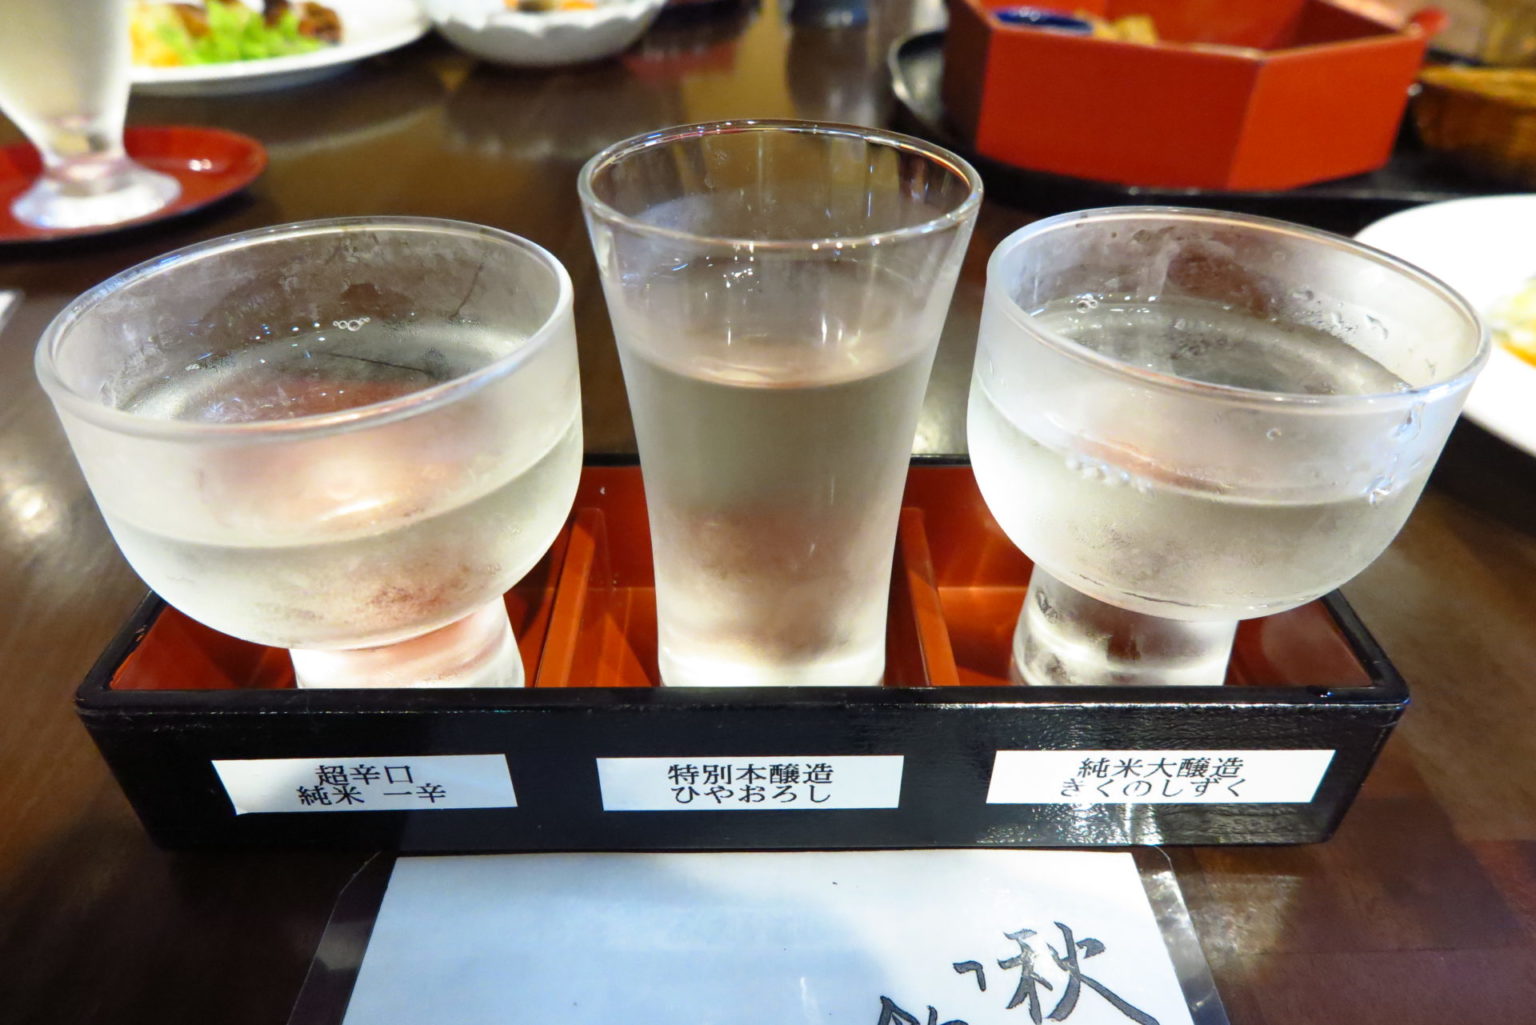 菊水酒造 (高知県)